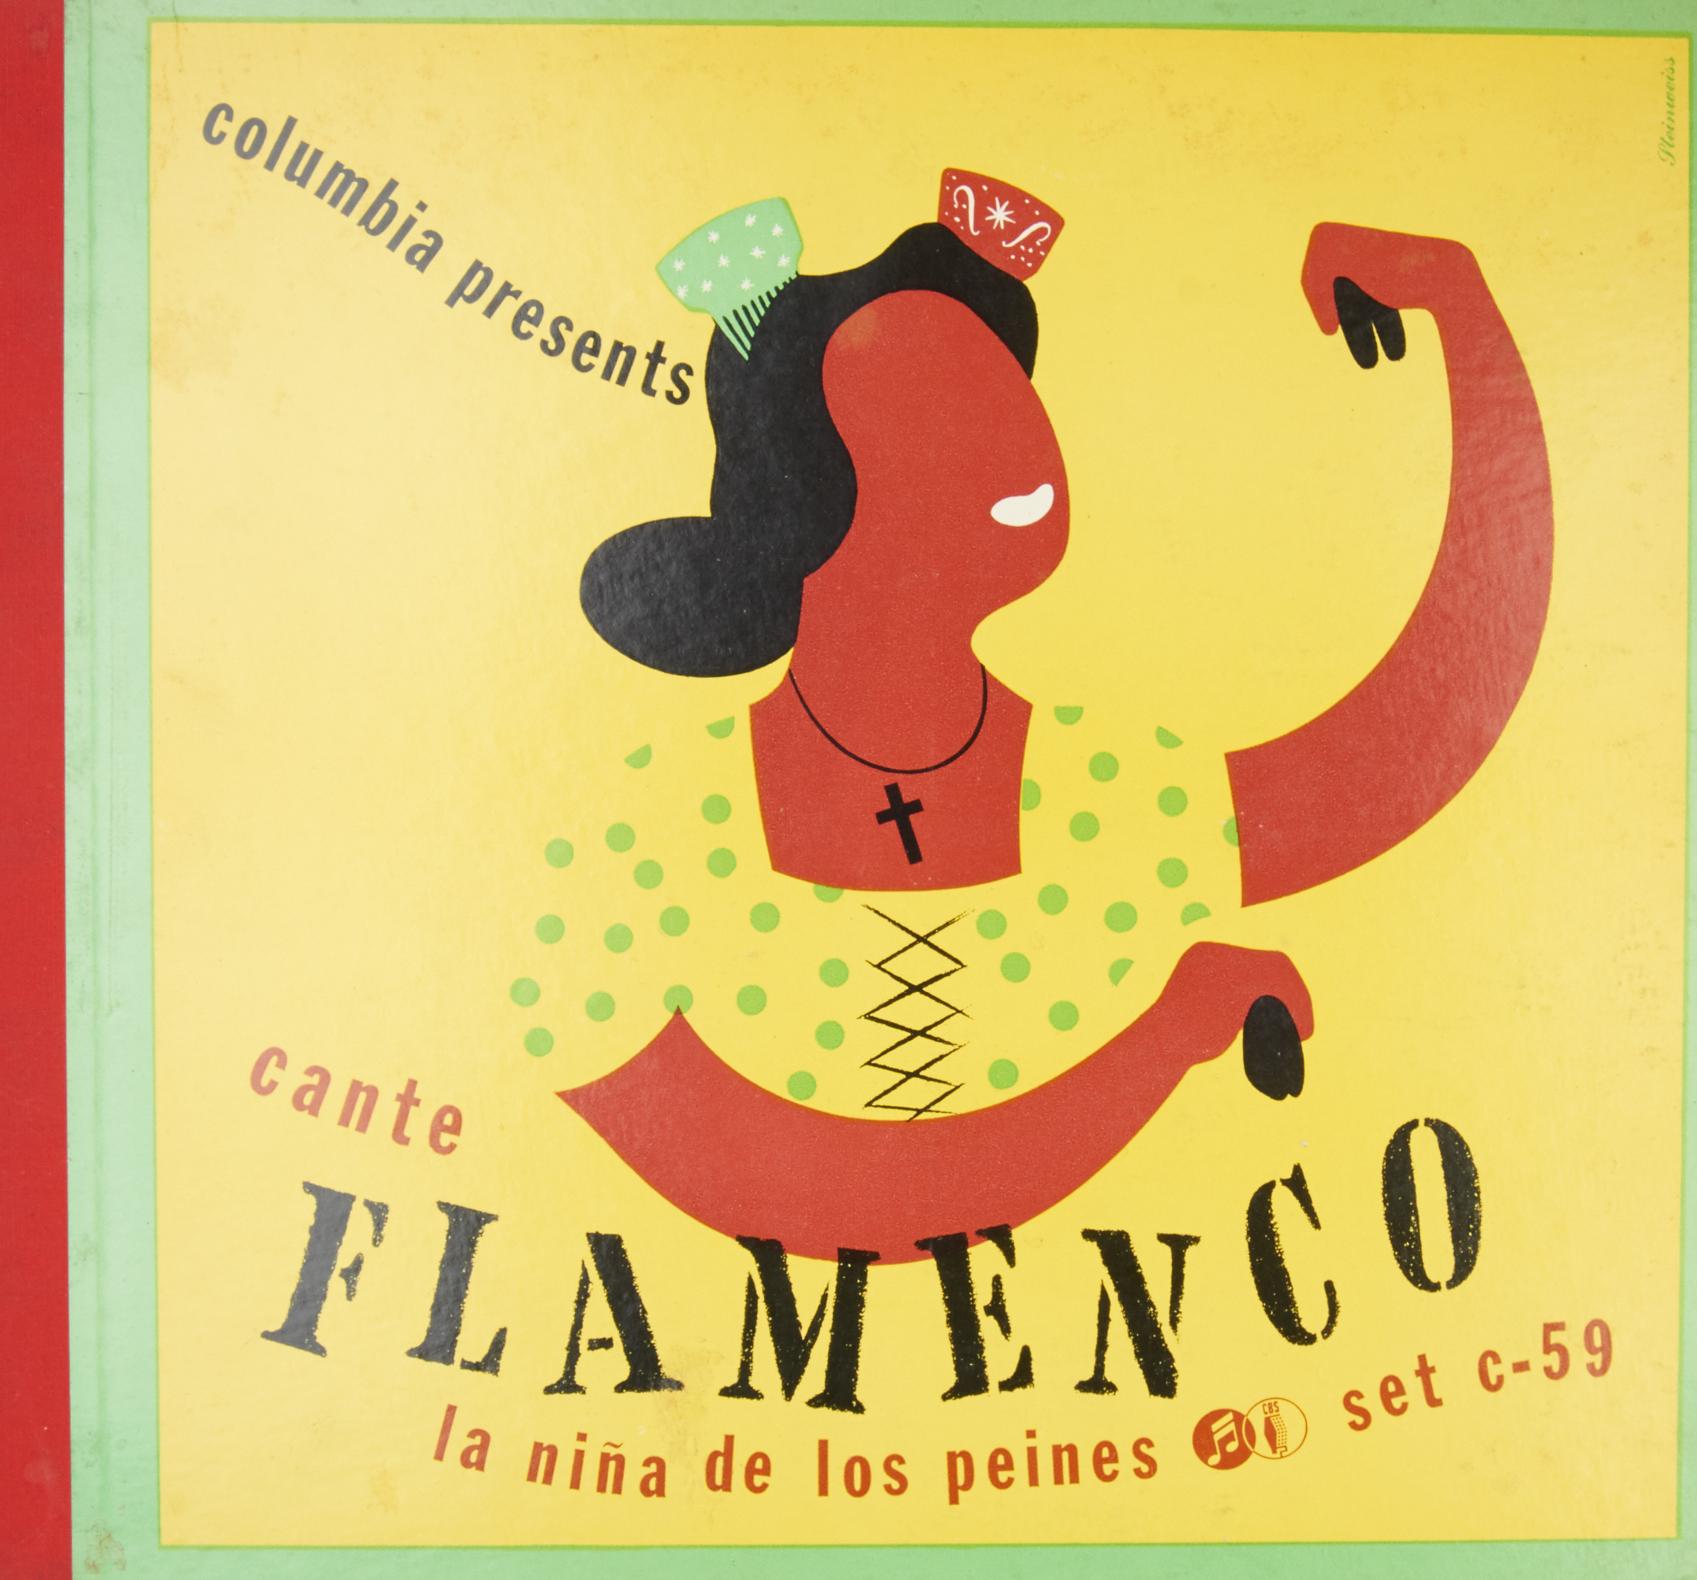 La Niña De Los Peines - Cante Flamenco - Reviews - Album of The Year